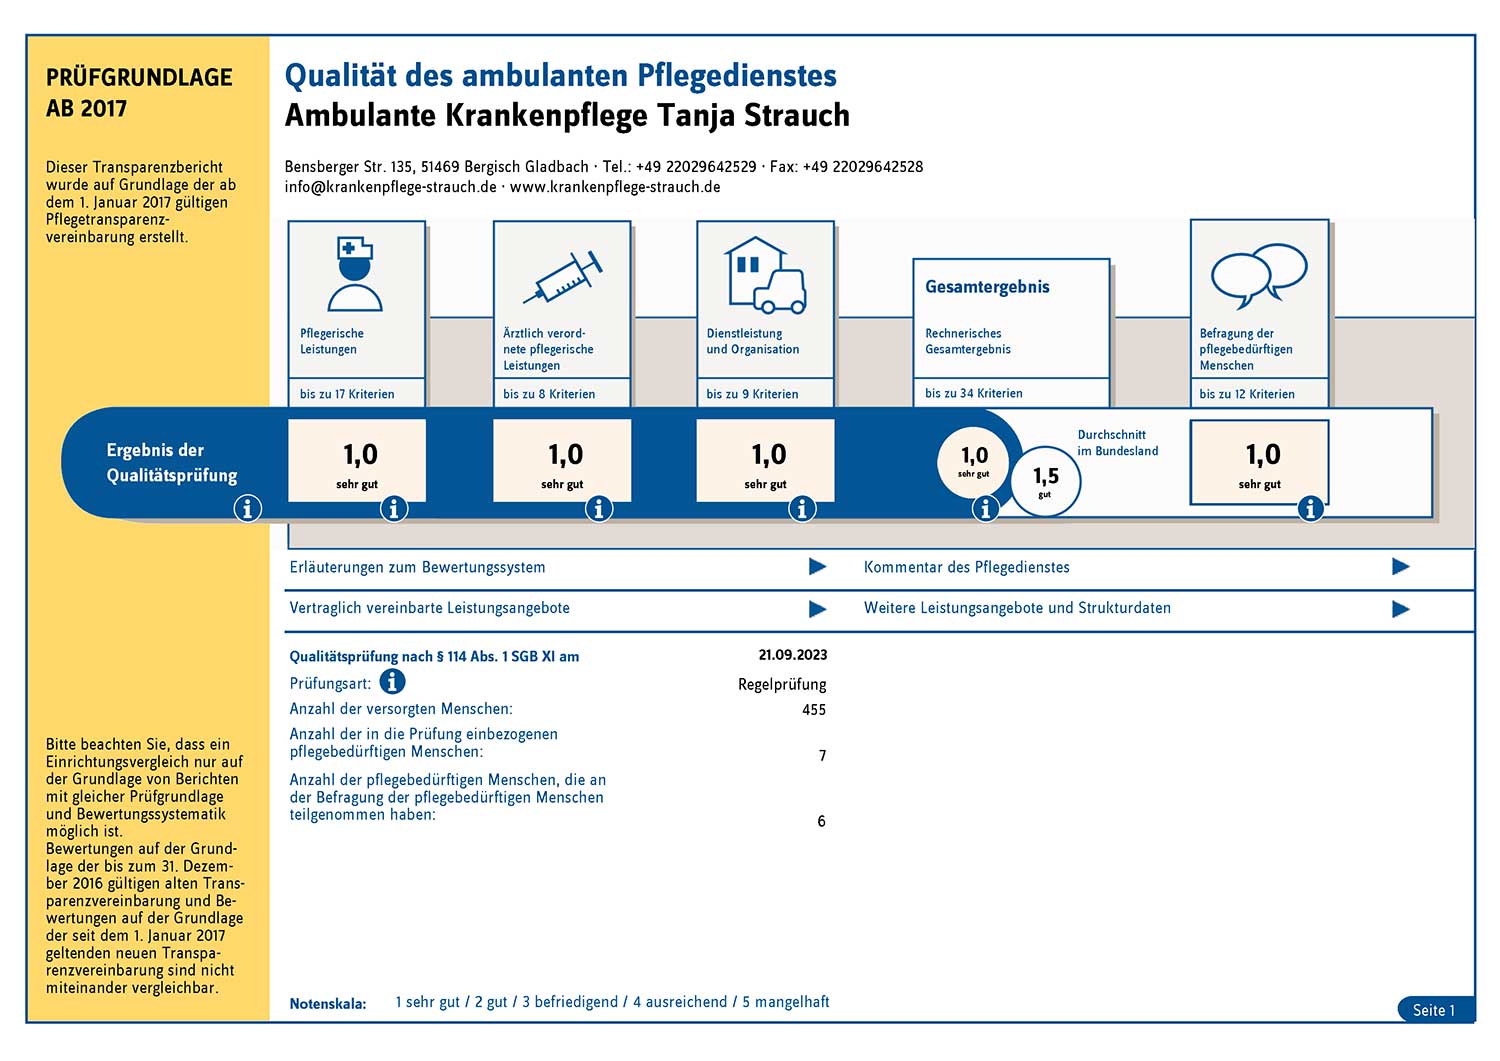 MDK-Transparentbericht für Krankenpflege Strauch